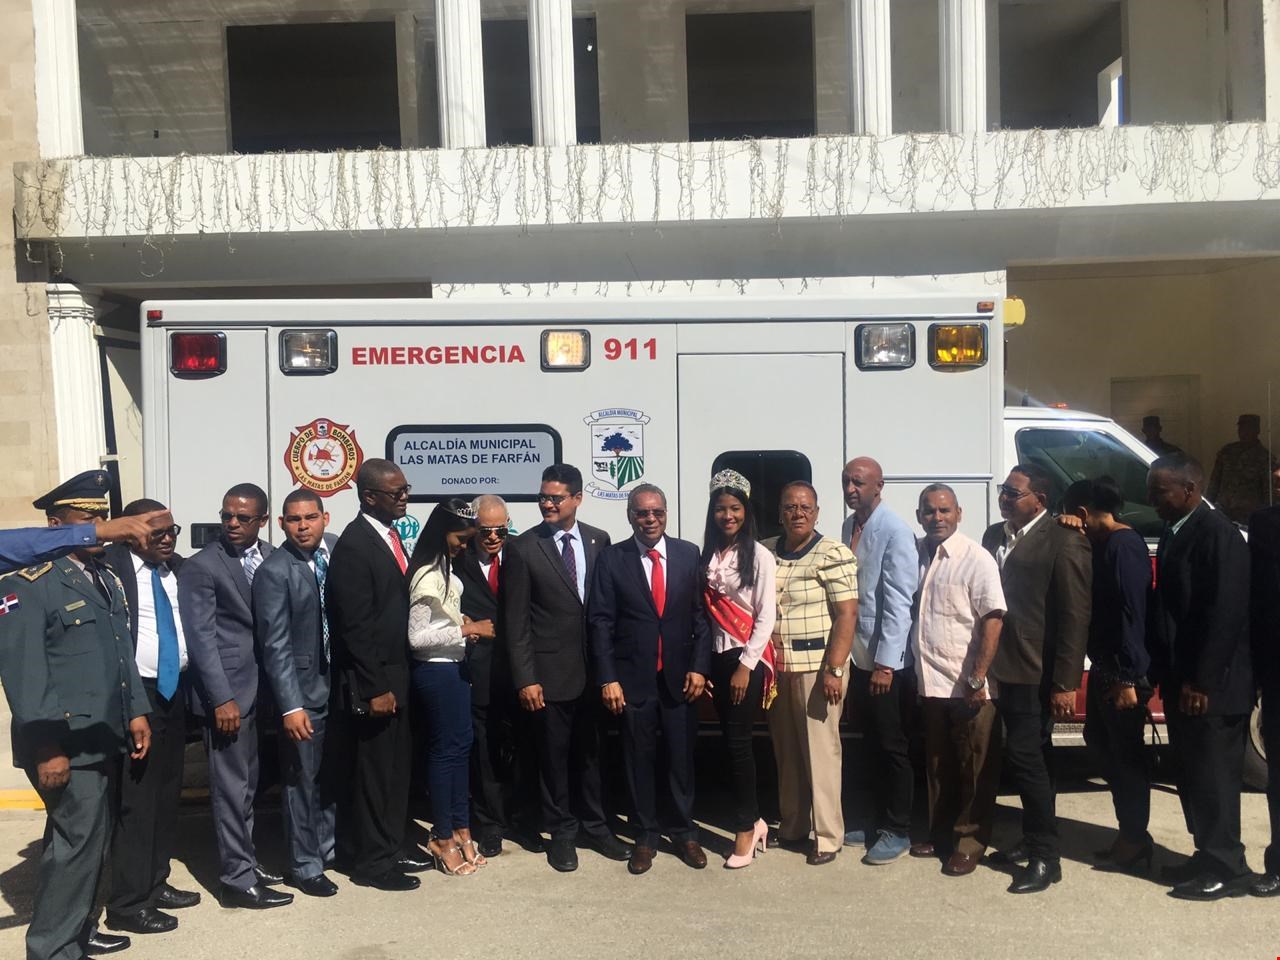 Iglesia Adventista del Séptimo Día donan ambulancia a Las Matas de Farfán